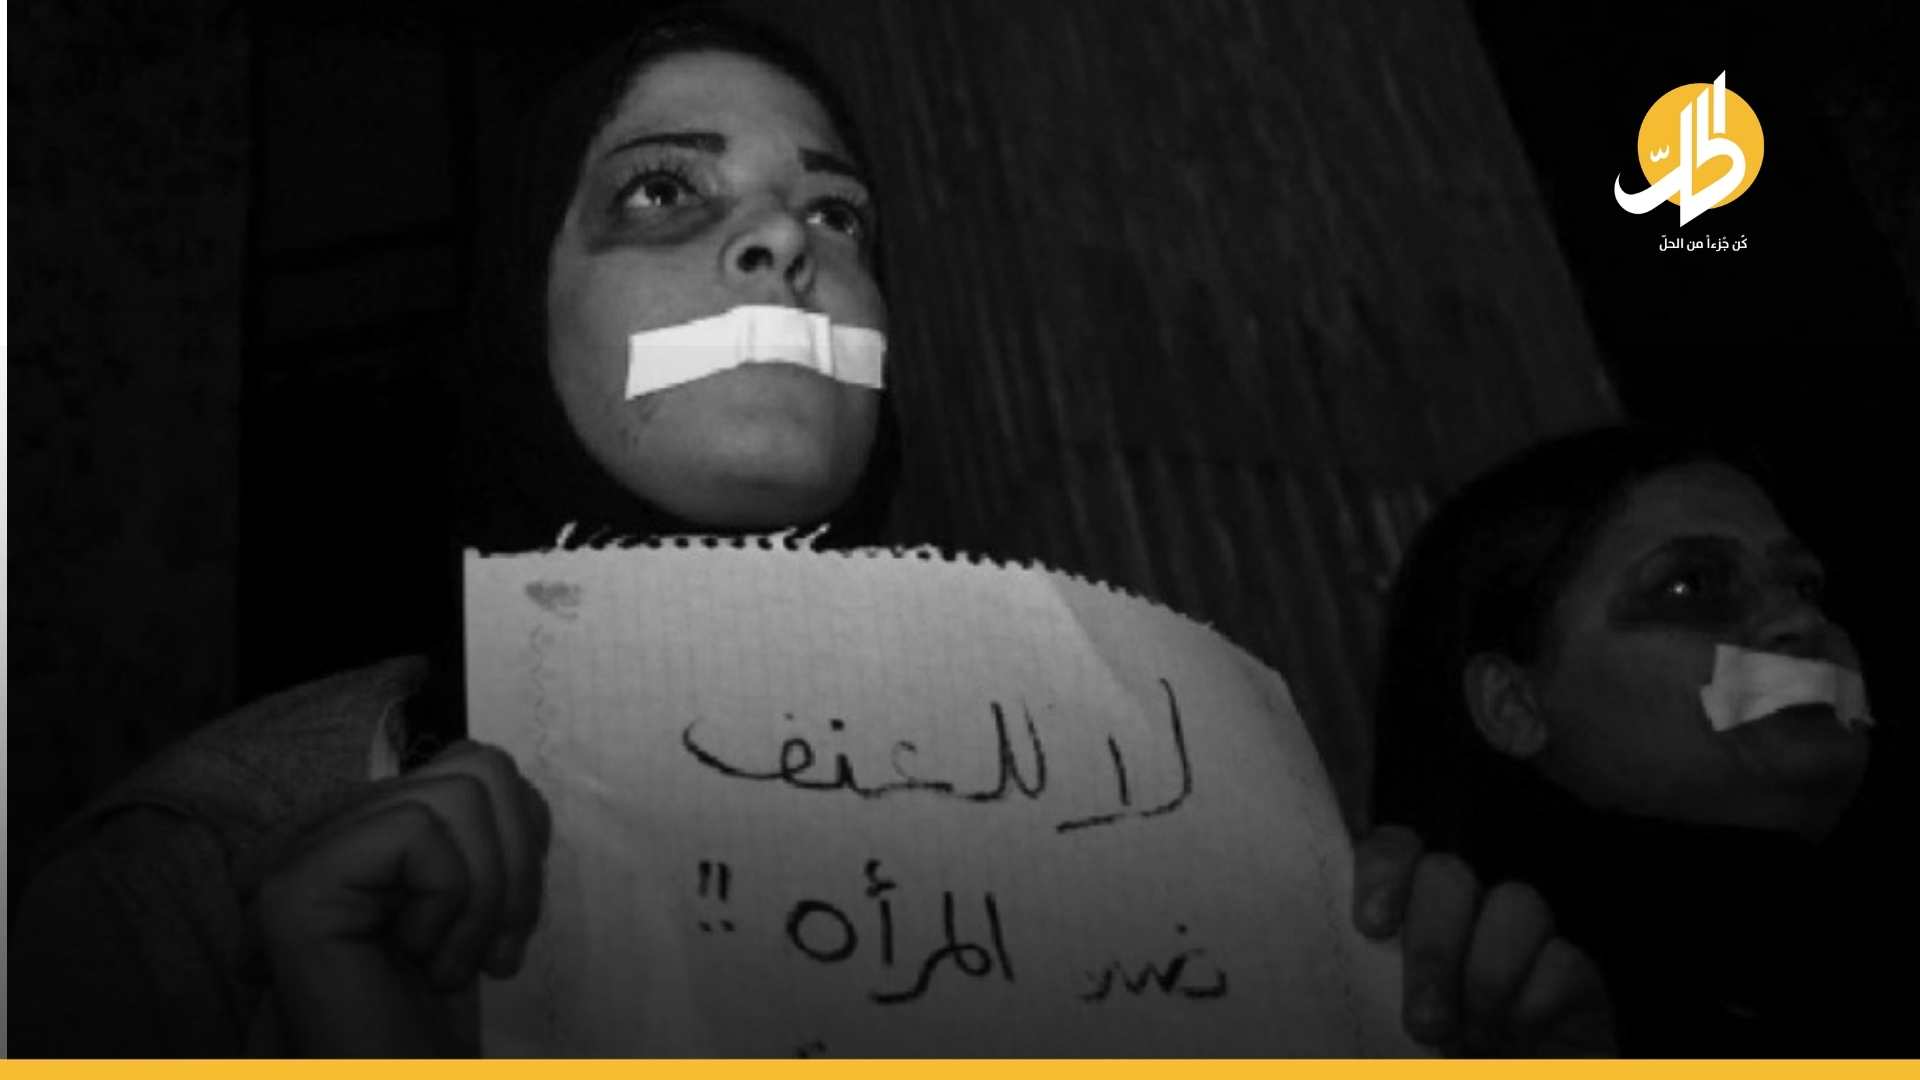 العنف الأسري في العراق: 1543 حالة تعنيف بجانب الرصافة في بغداد